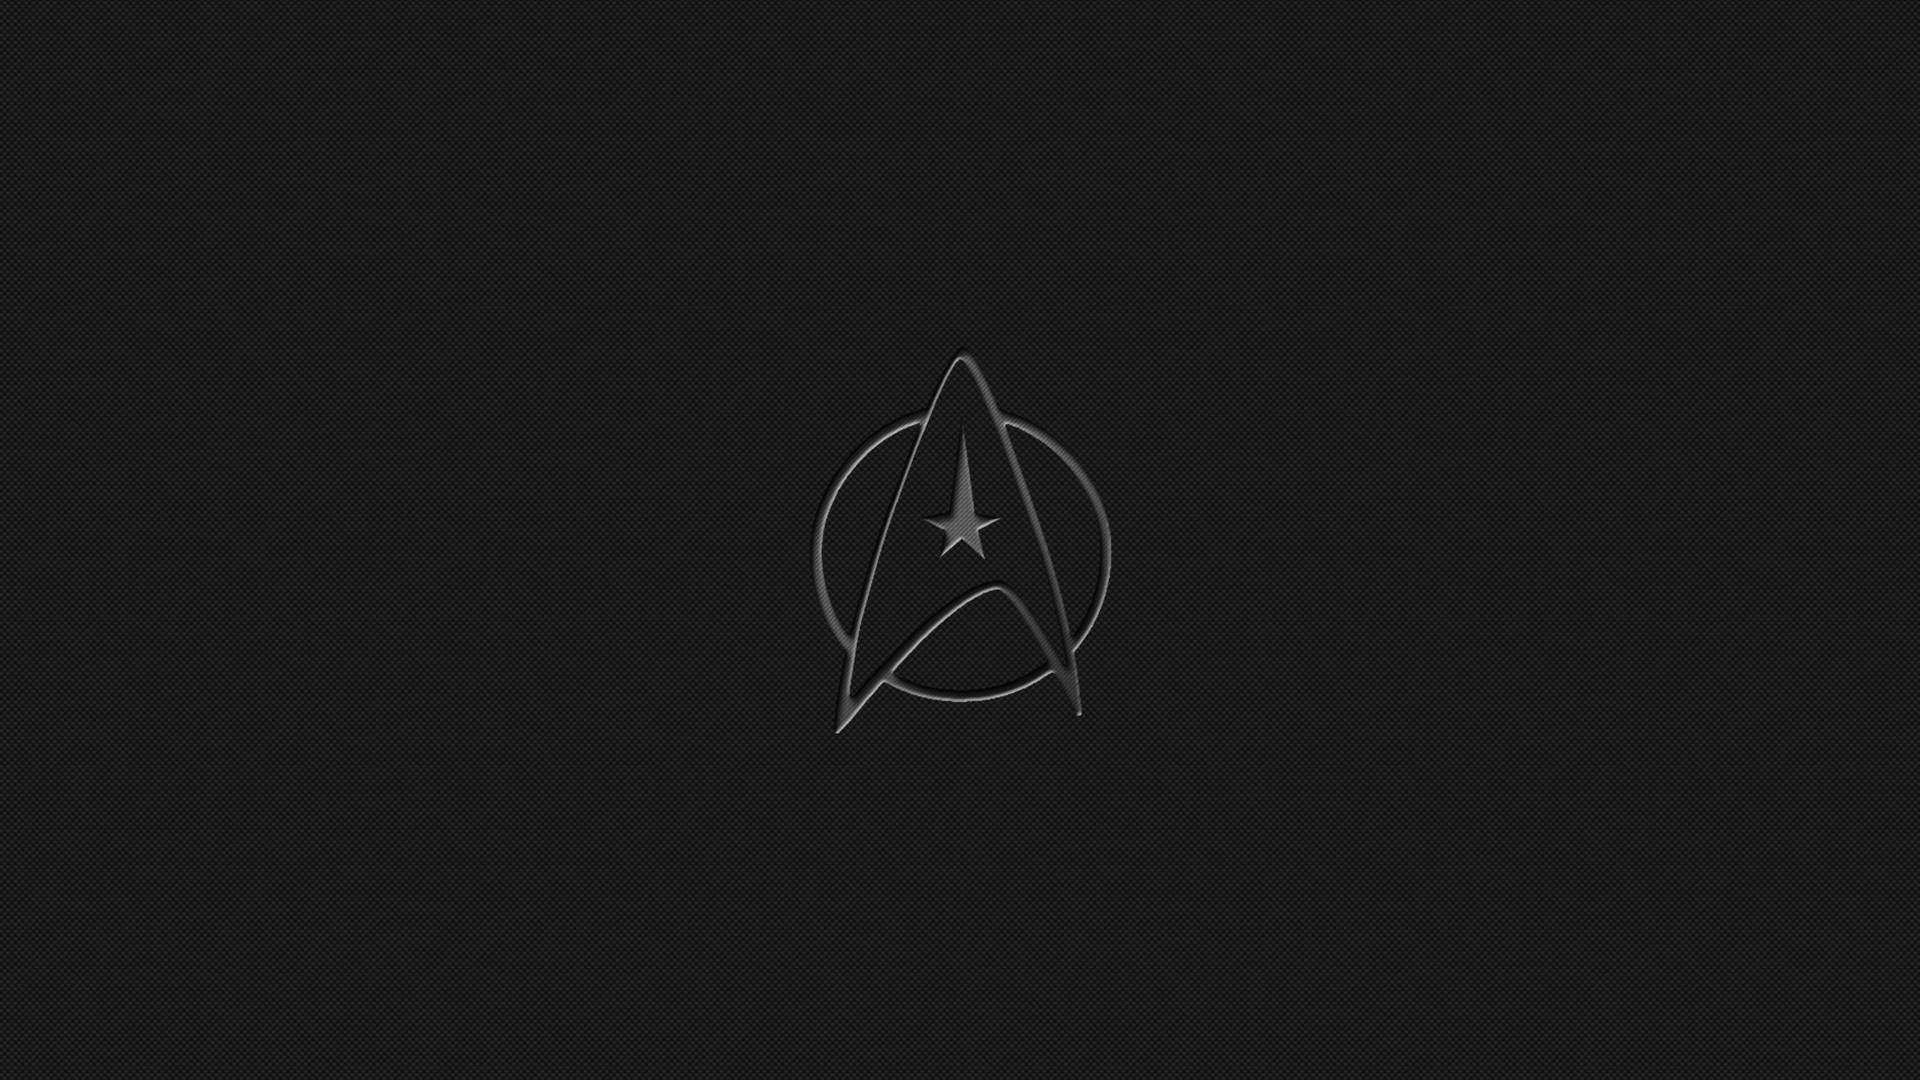 Great and simple wallpaper of art logo of Star Trek. 